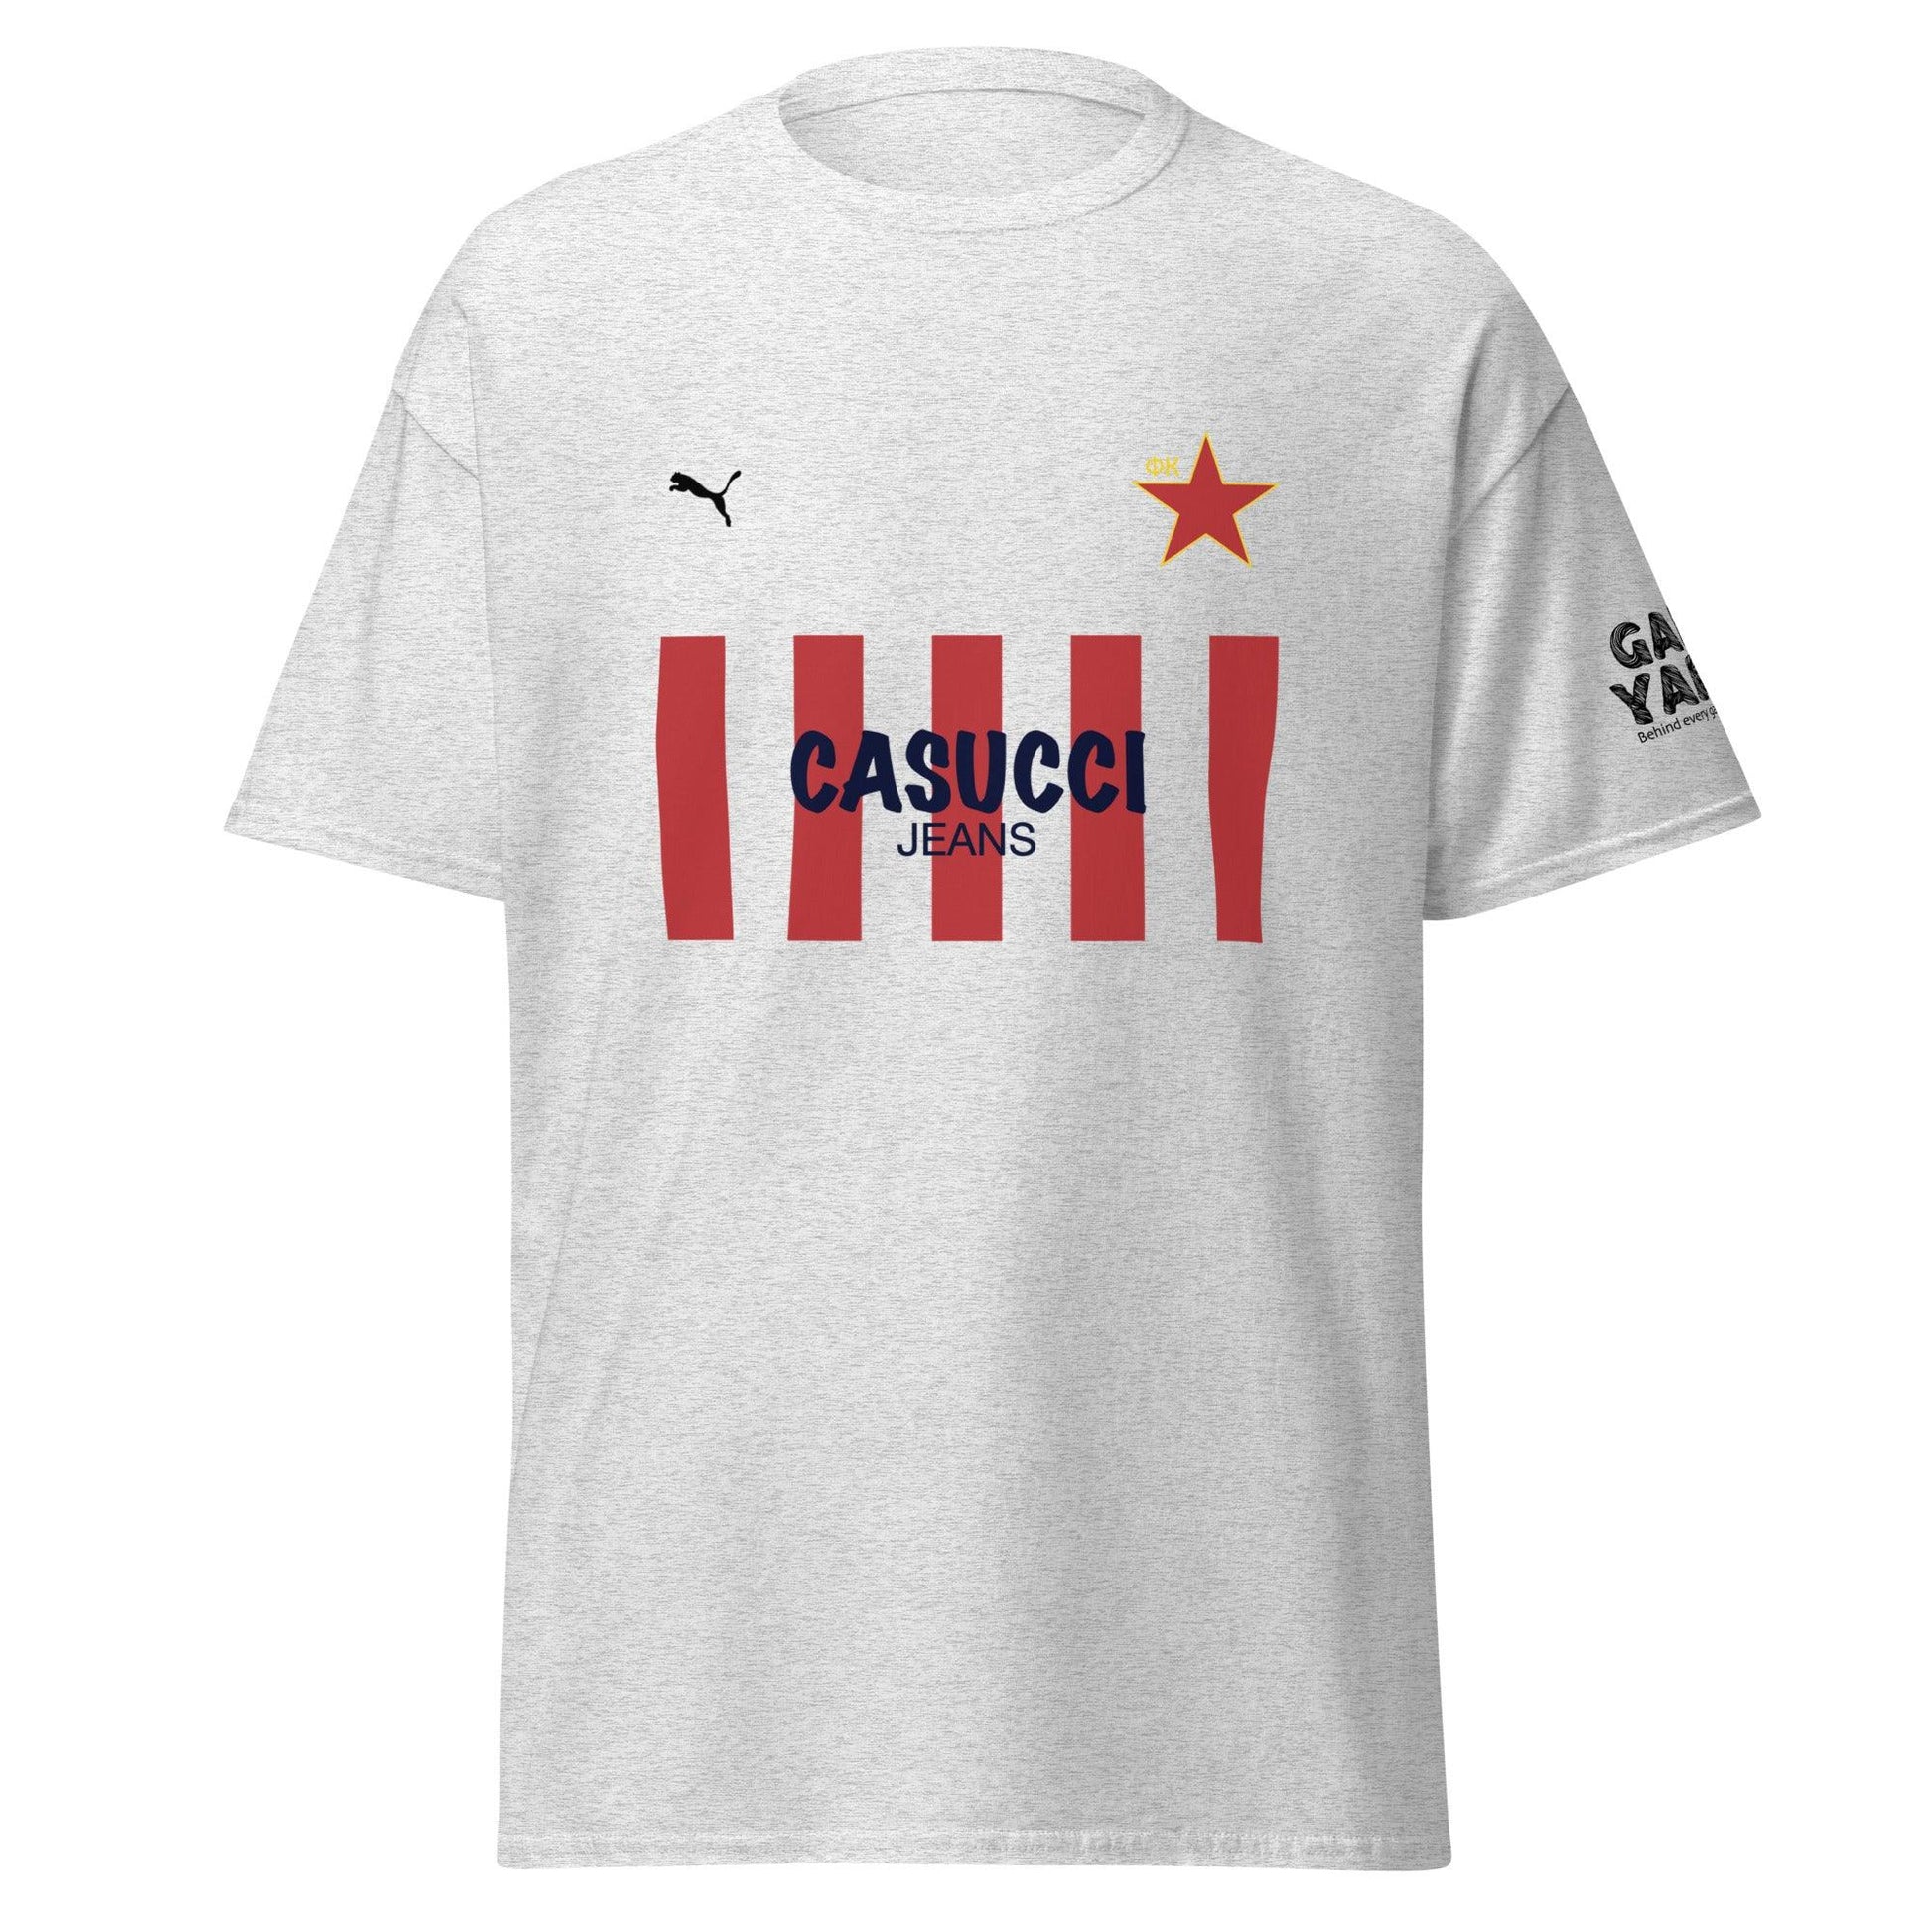 Red Star Retro T-shirt by Game Yarns  Fudbalski klub Crvena zvezda by Game Yarns